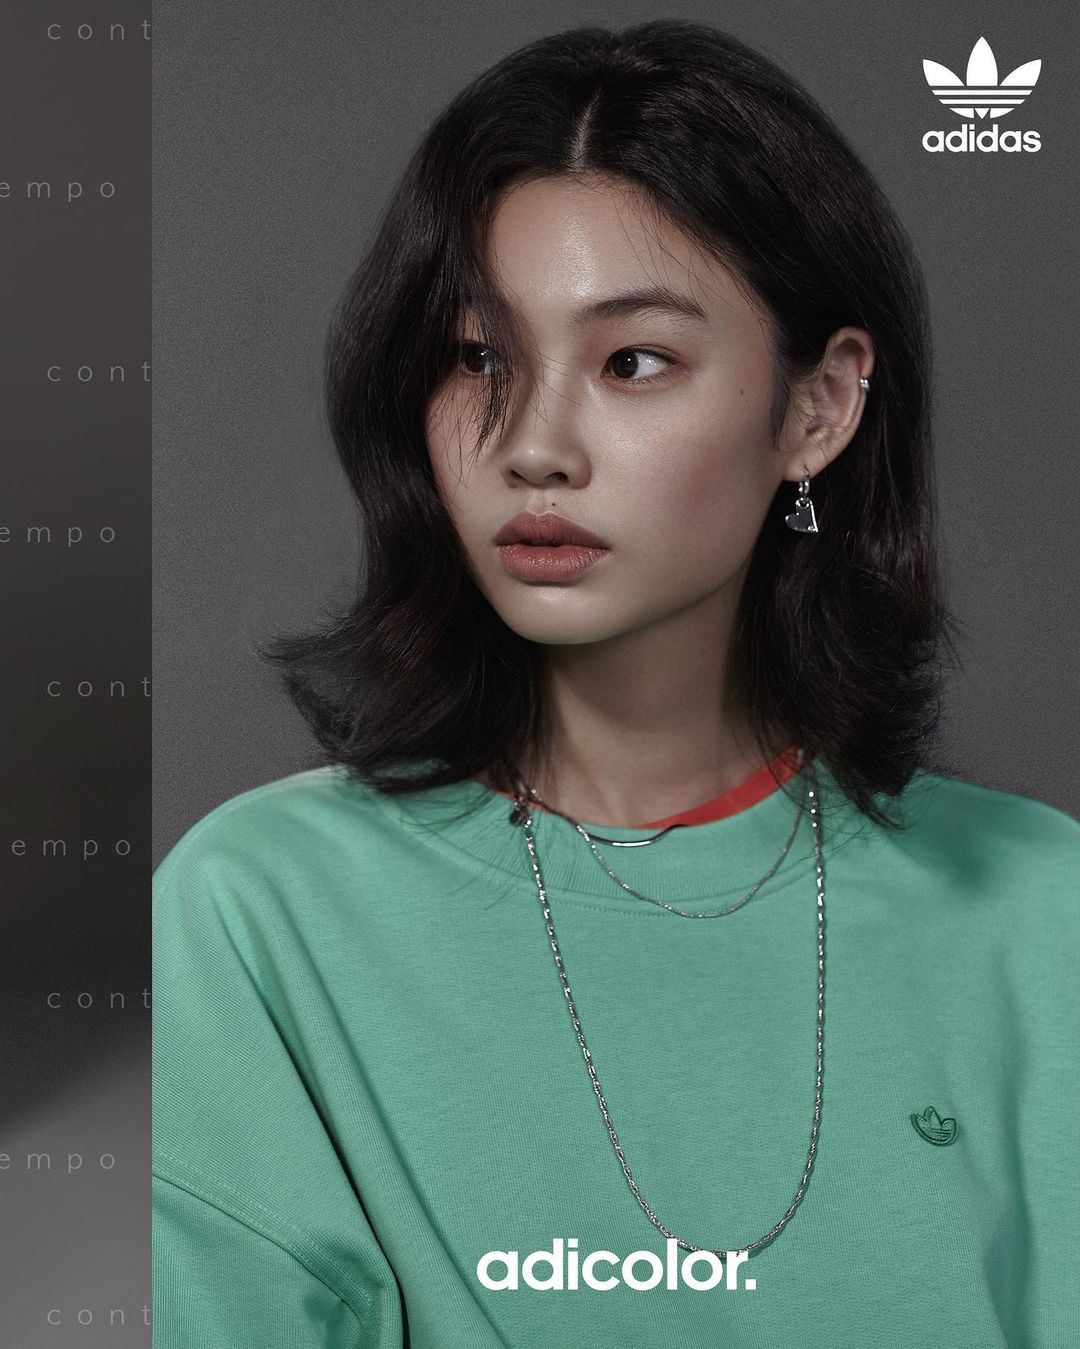 Jung Ho-yeon promoting Adicolor by Adidas Originals